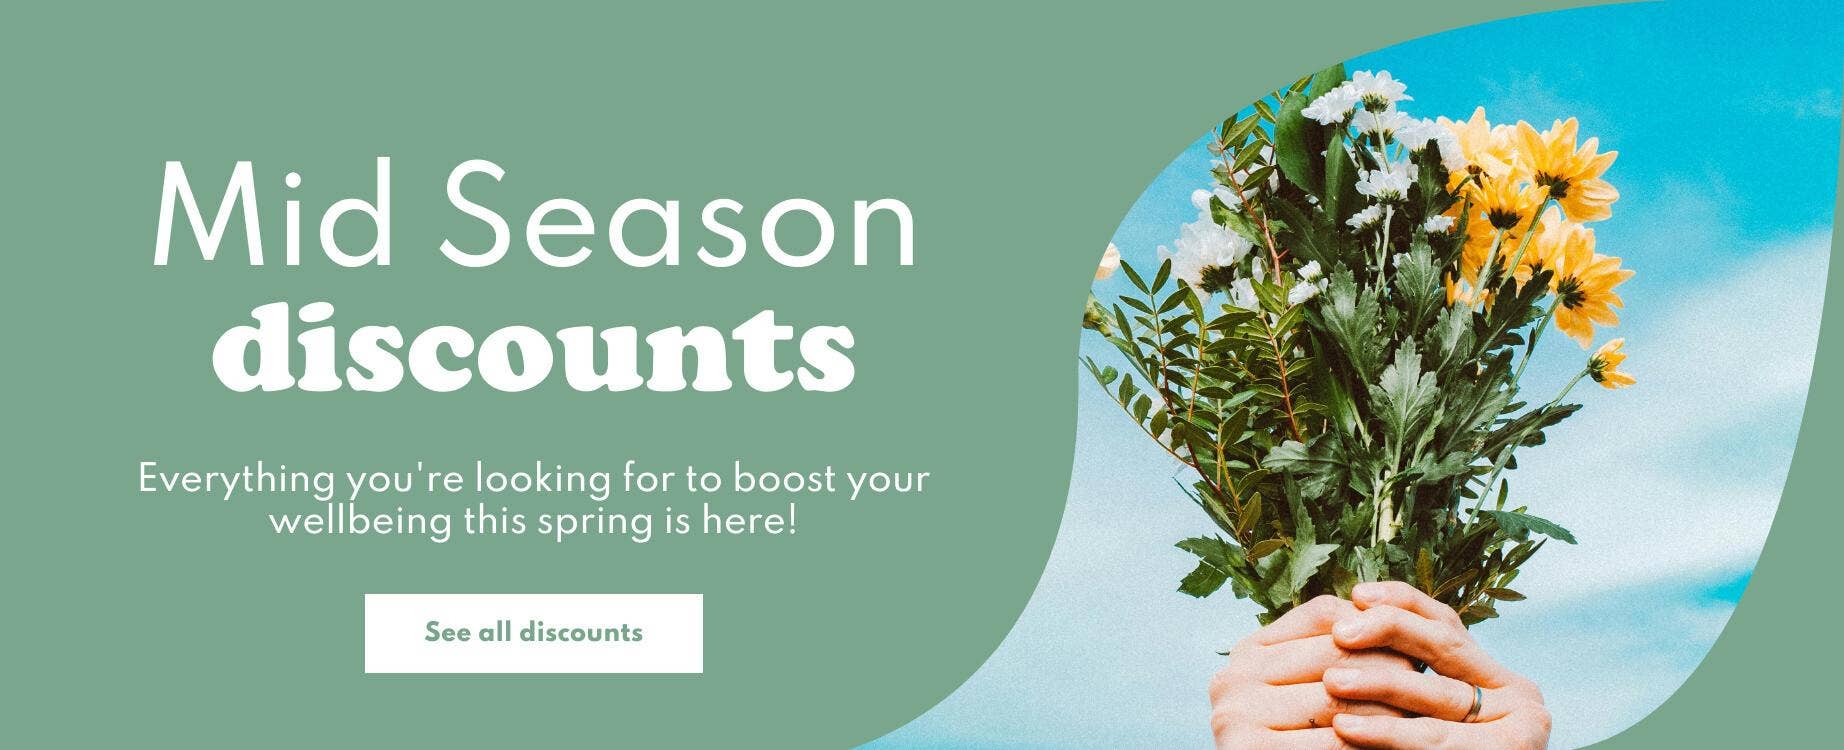 Mid Season Discounts by Easypara